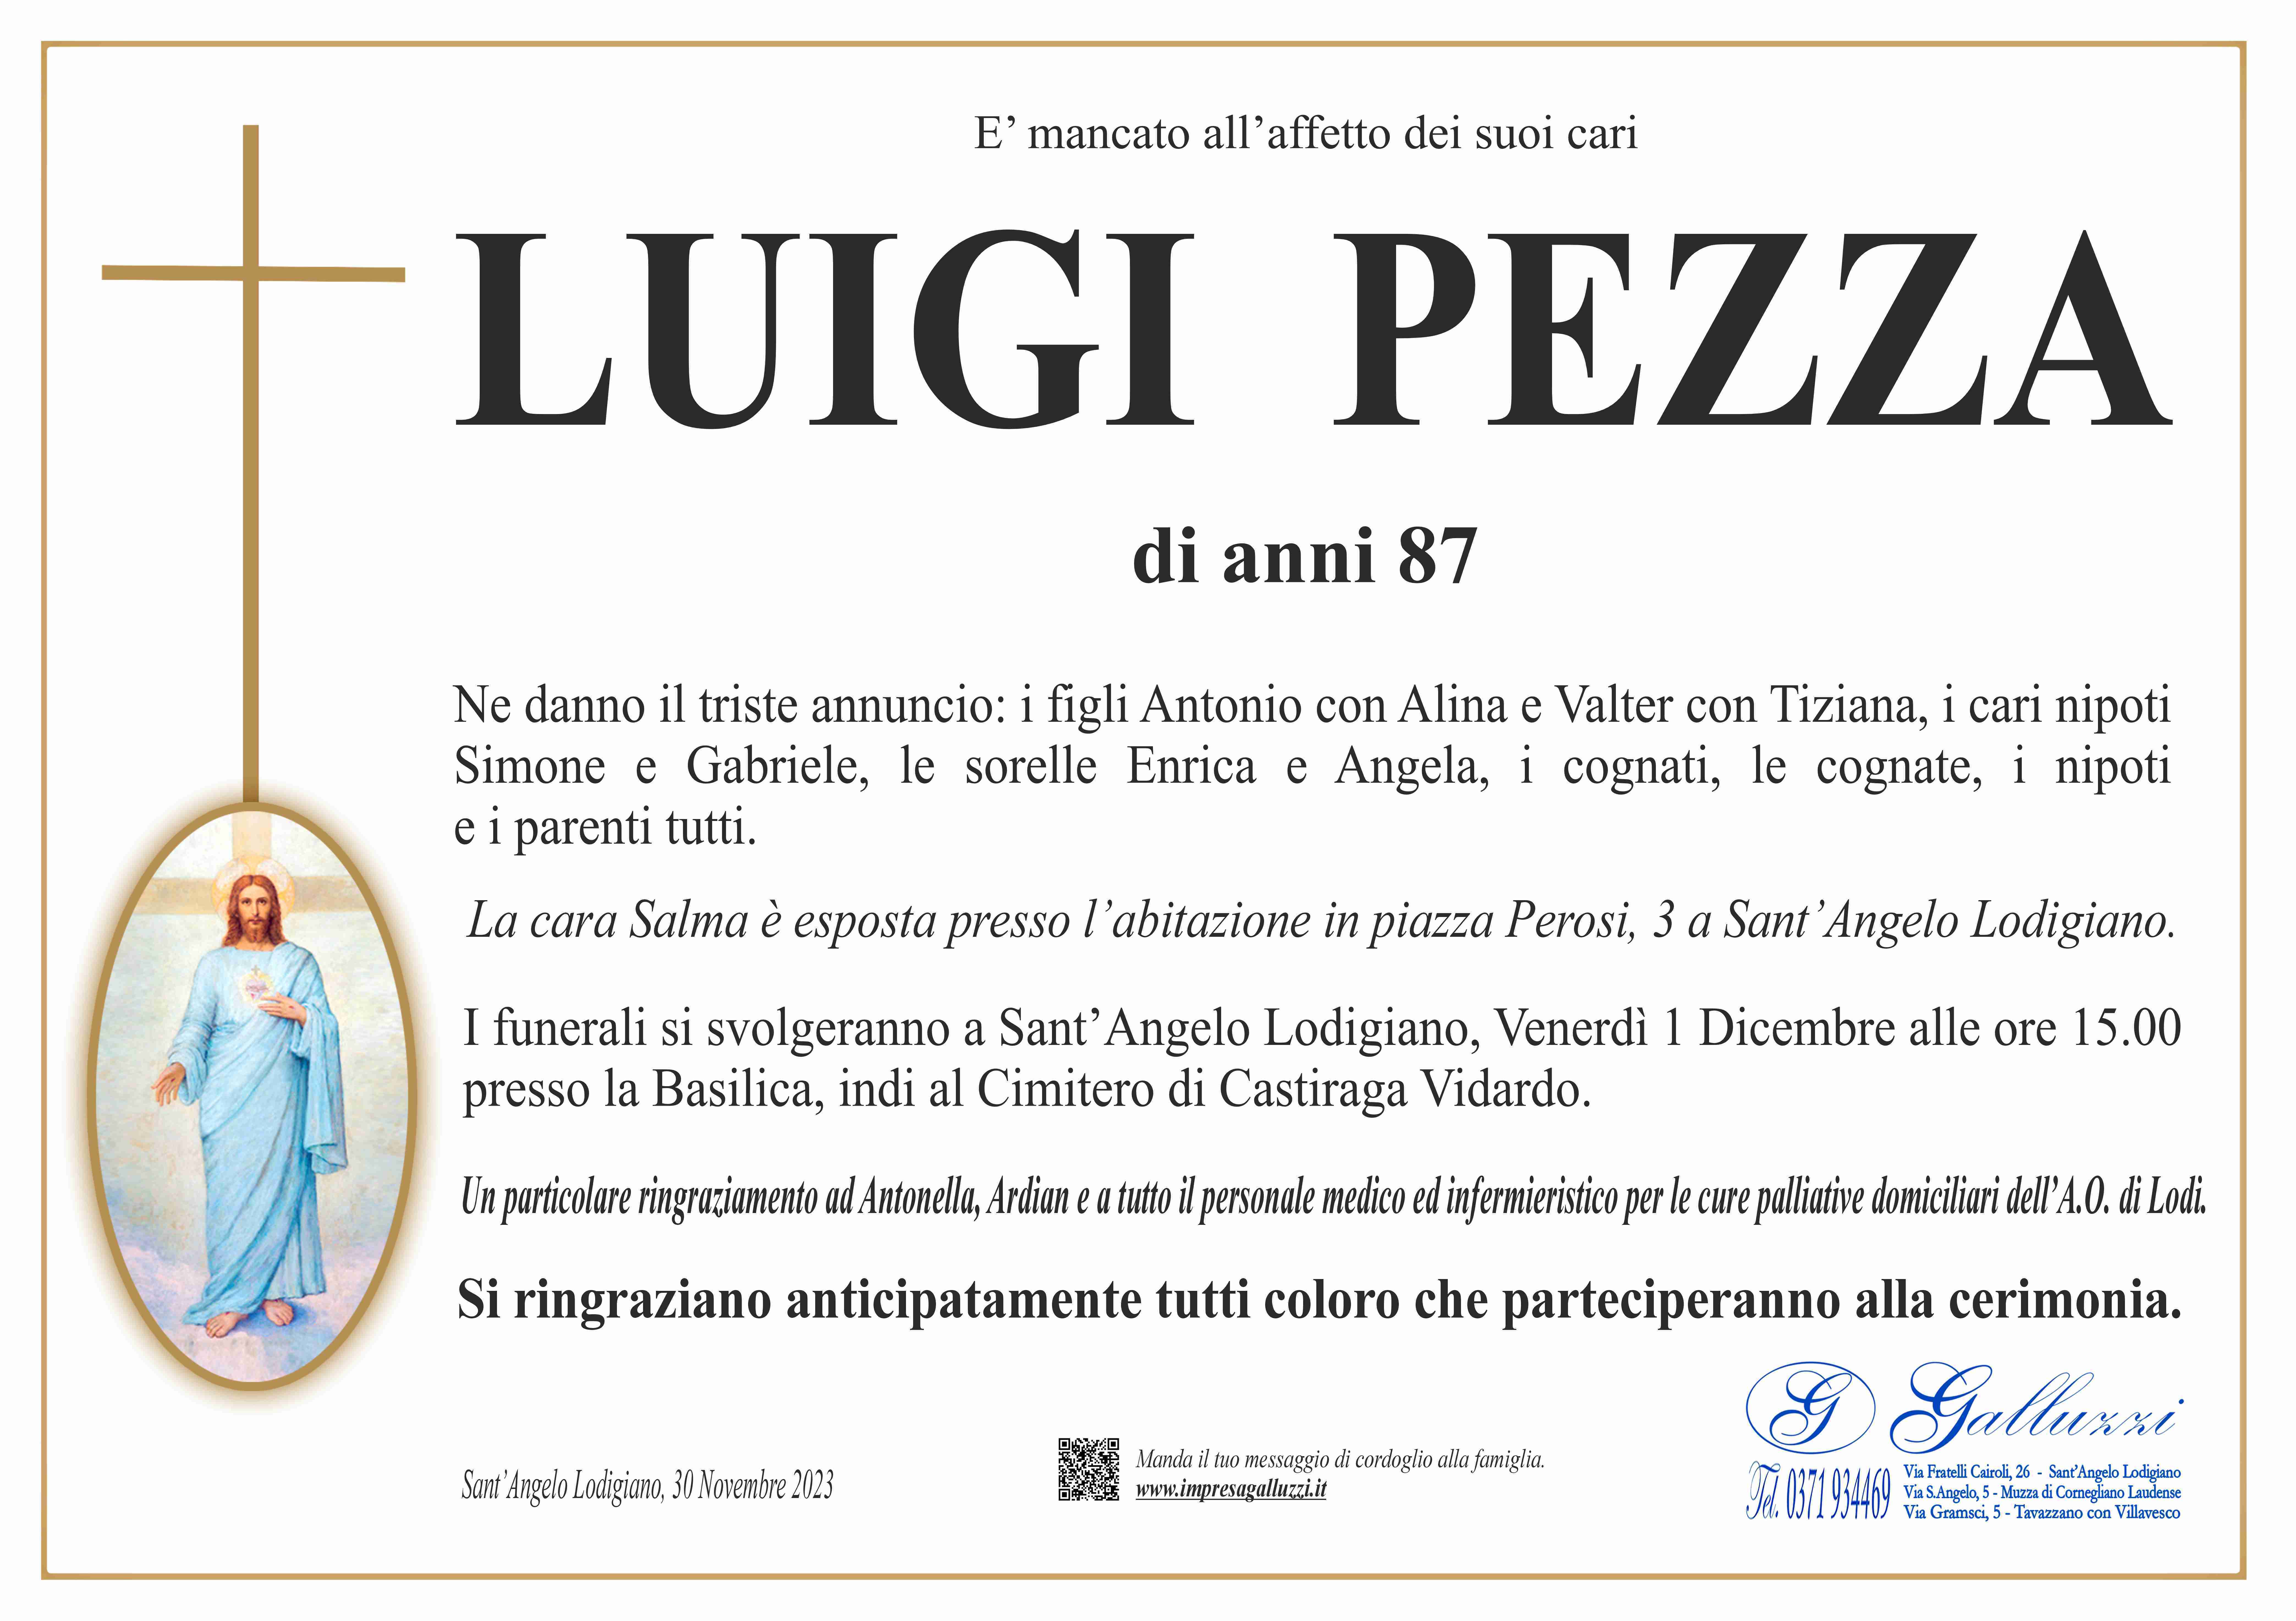 Luigi Pezza